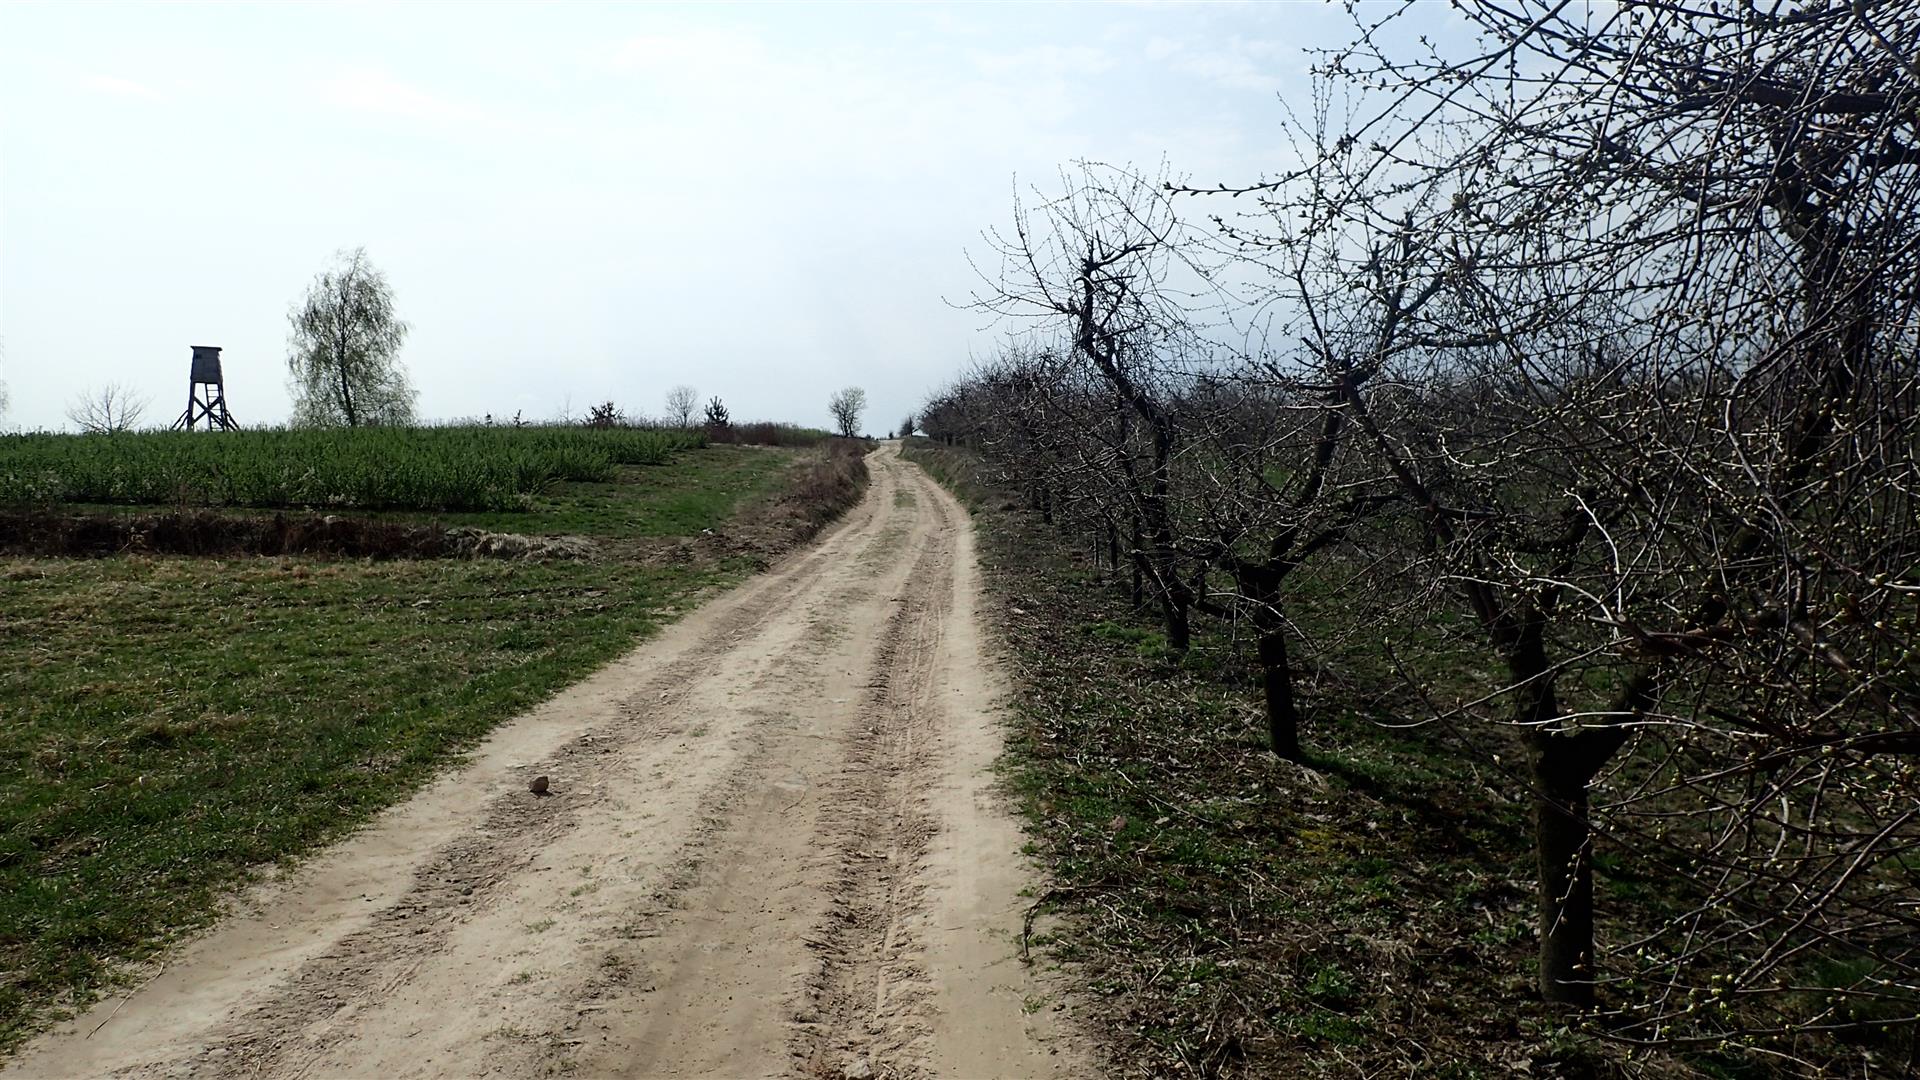 
                                                       Wiosennych szlaków po Powiecie Puławskim ciąg dalszy
                                                